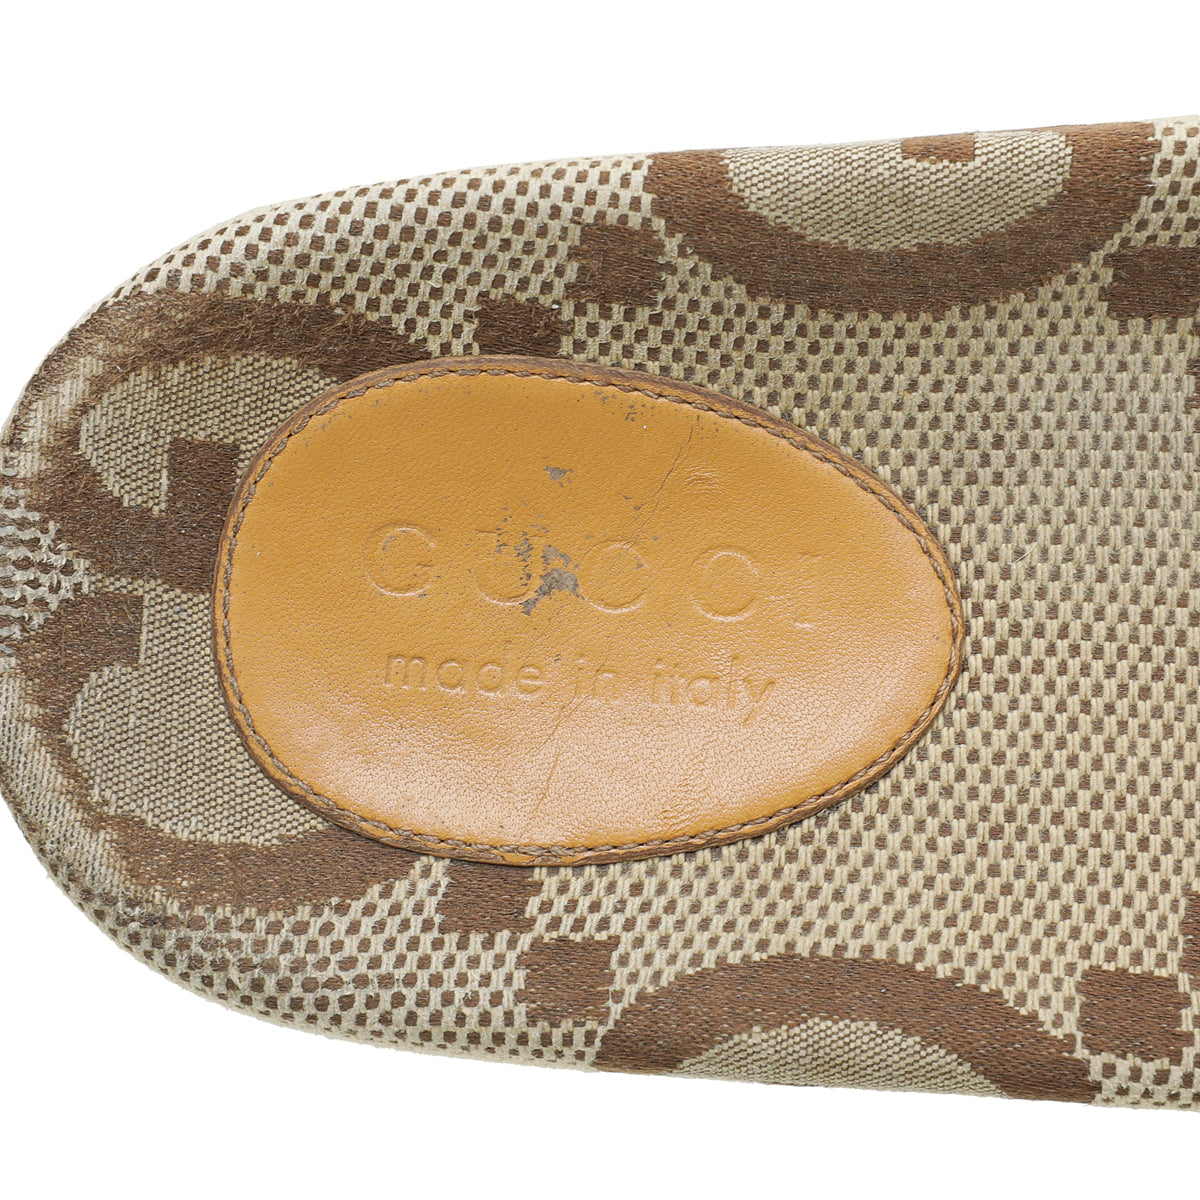 Gucci Bicolor GG Slide Maxi Sandals 9